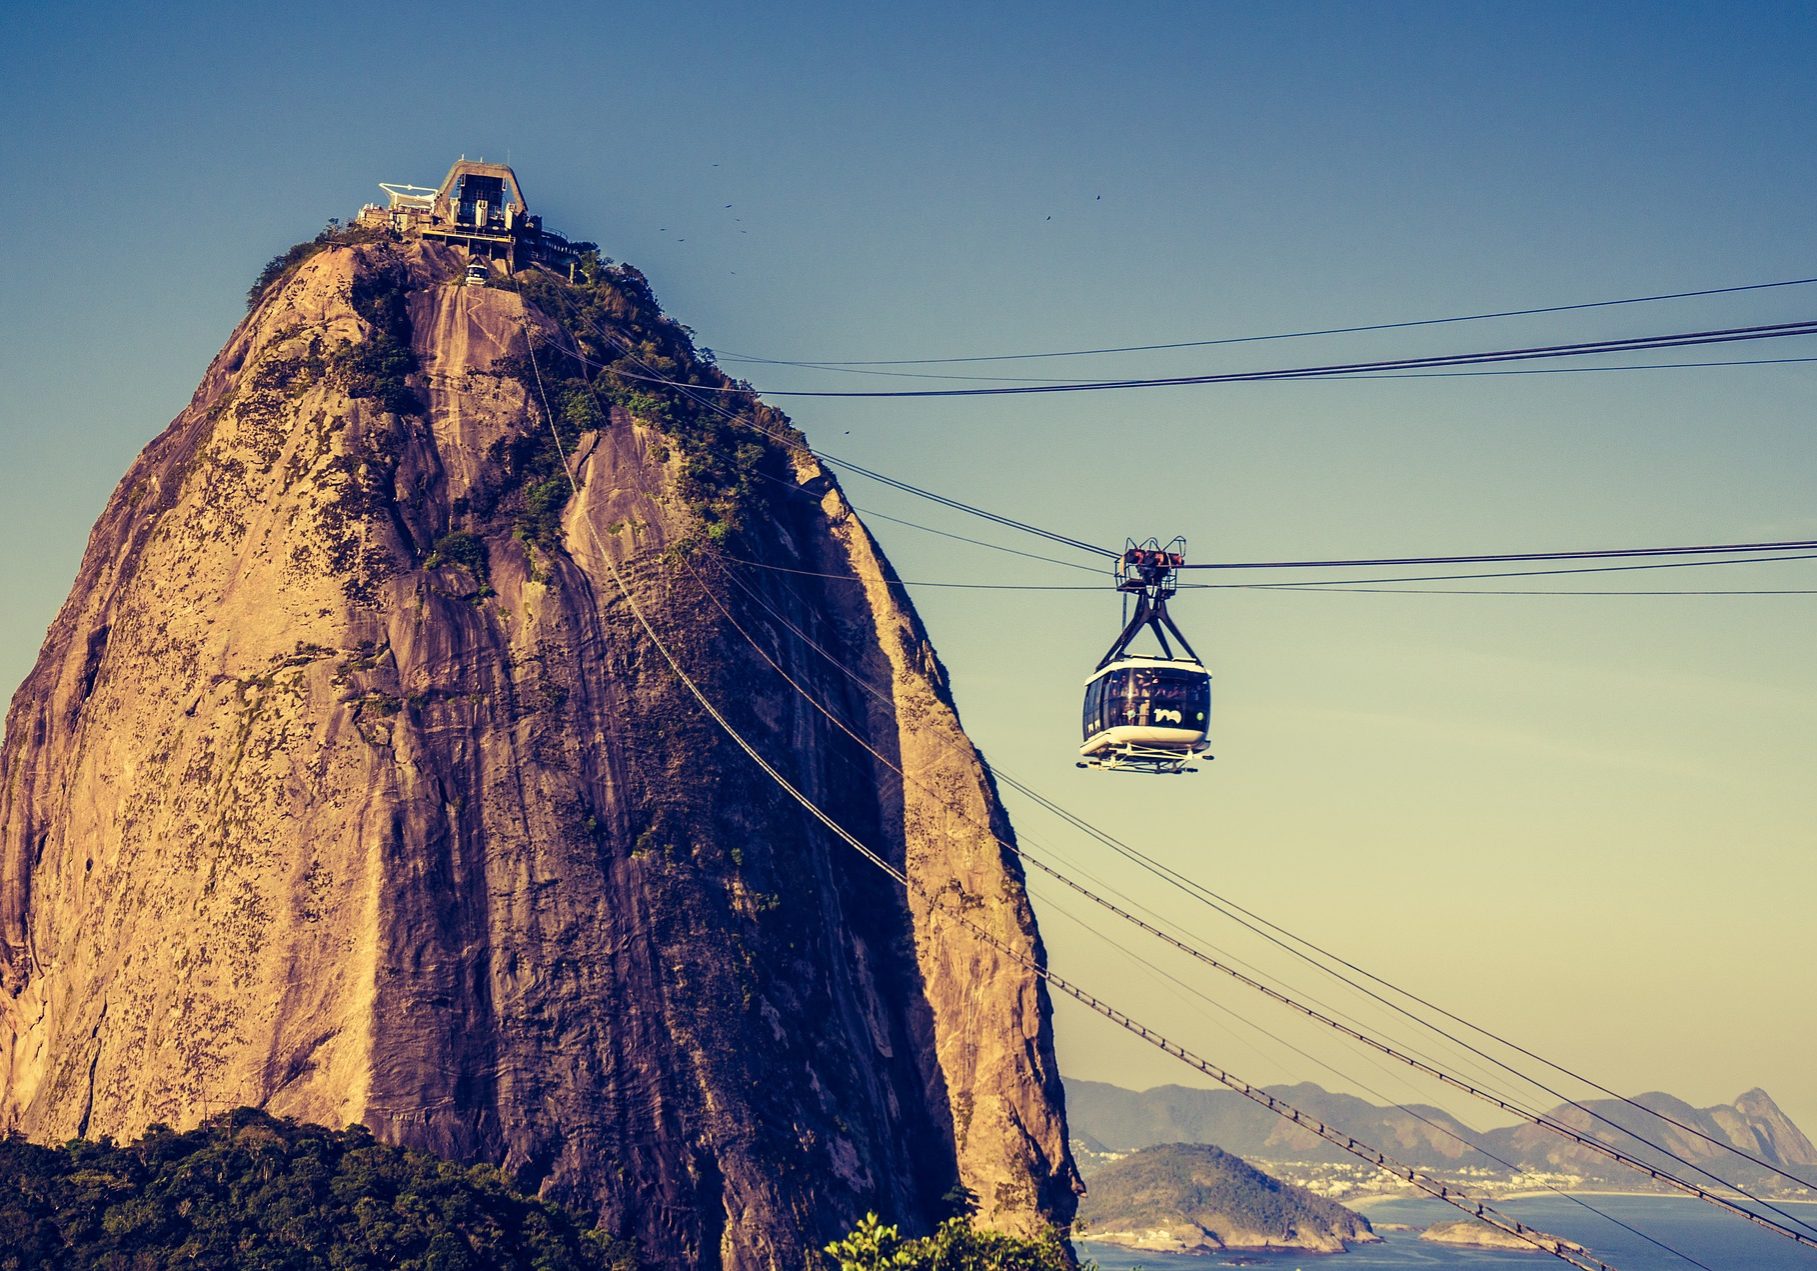 Mit der Gondel geht's hinauf zum berühmten Zuckerhut in Rio – schon die Seilbahnfahrt ist ein Erlebnis